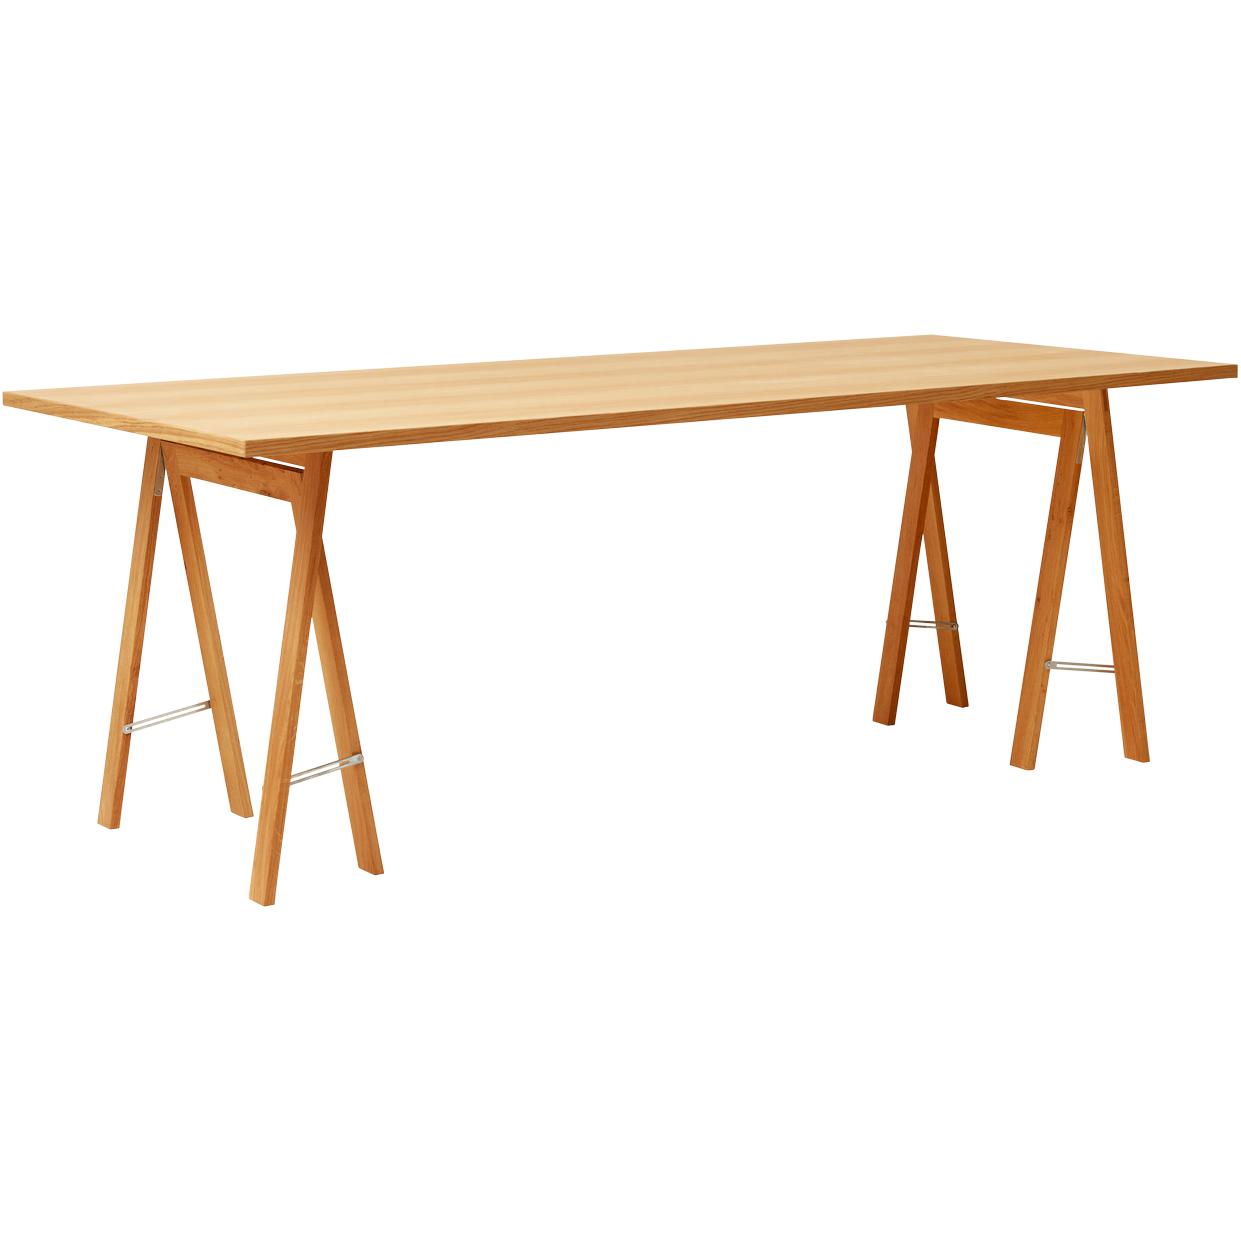 Form & Refine Linear Tischplatte 205x88 cm, Eiche